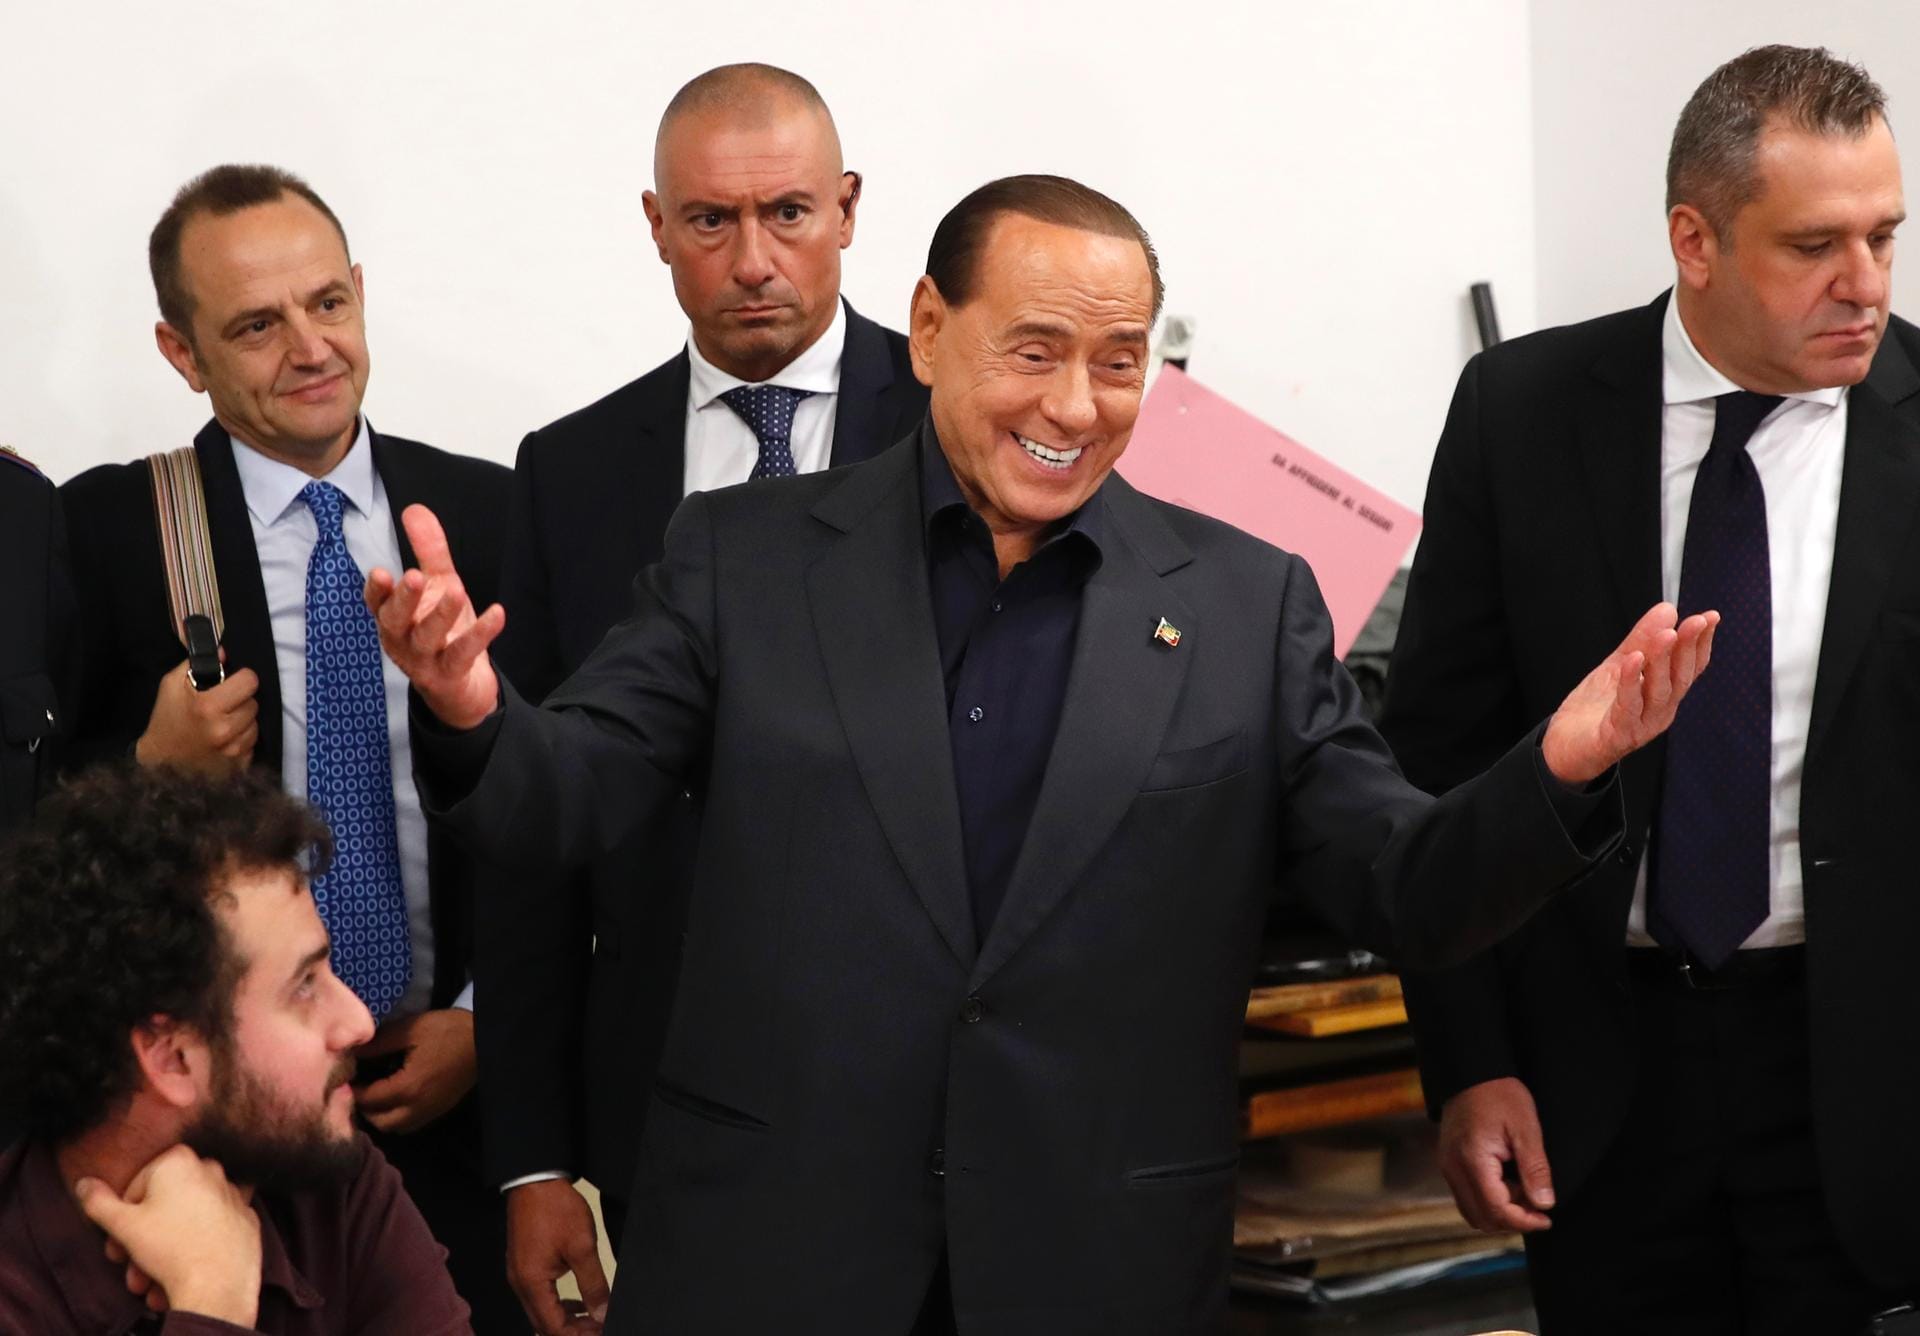 An der italienischen Parlamentswahl im Frühling konnte Silvio Berlusconi wegen eines 2013 verhängten mehrjährigen Ämterverbots nicht teilnehmen. Das Verbot ist inzwischen aufgehoben, jetzt zieht der wegen Steuerbetrugs verurteilte ehemalige italienische Regierungschef ins Europaparlament ein. (Archivbild)